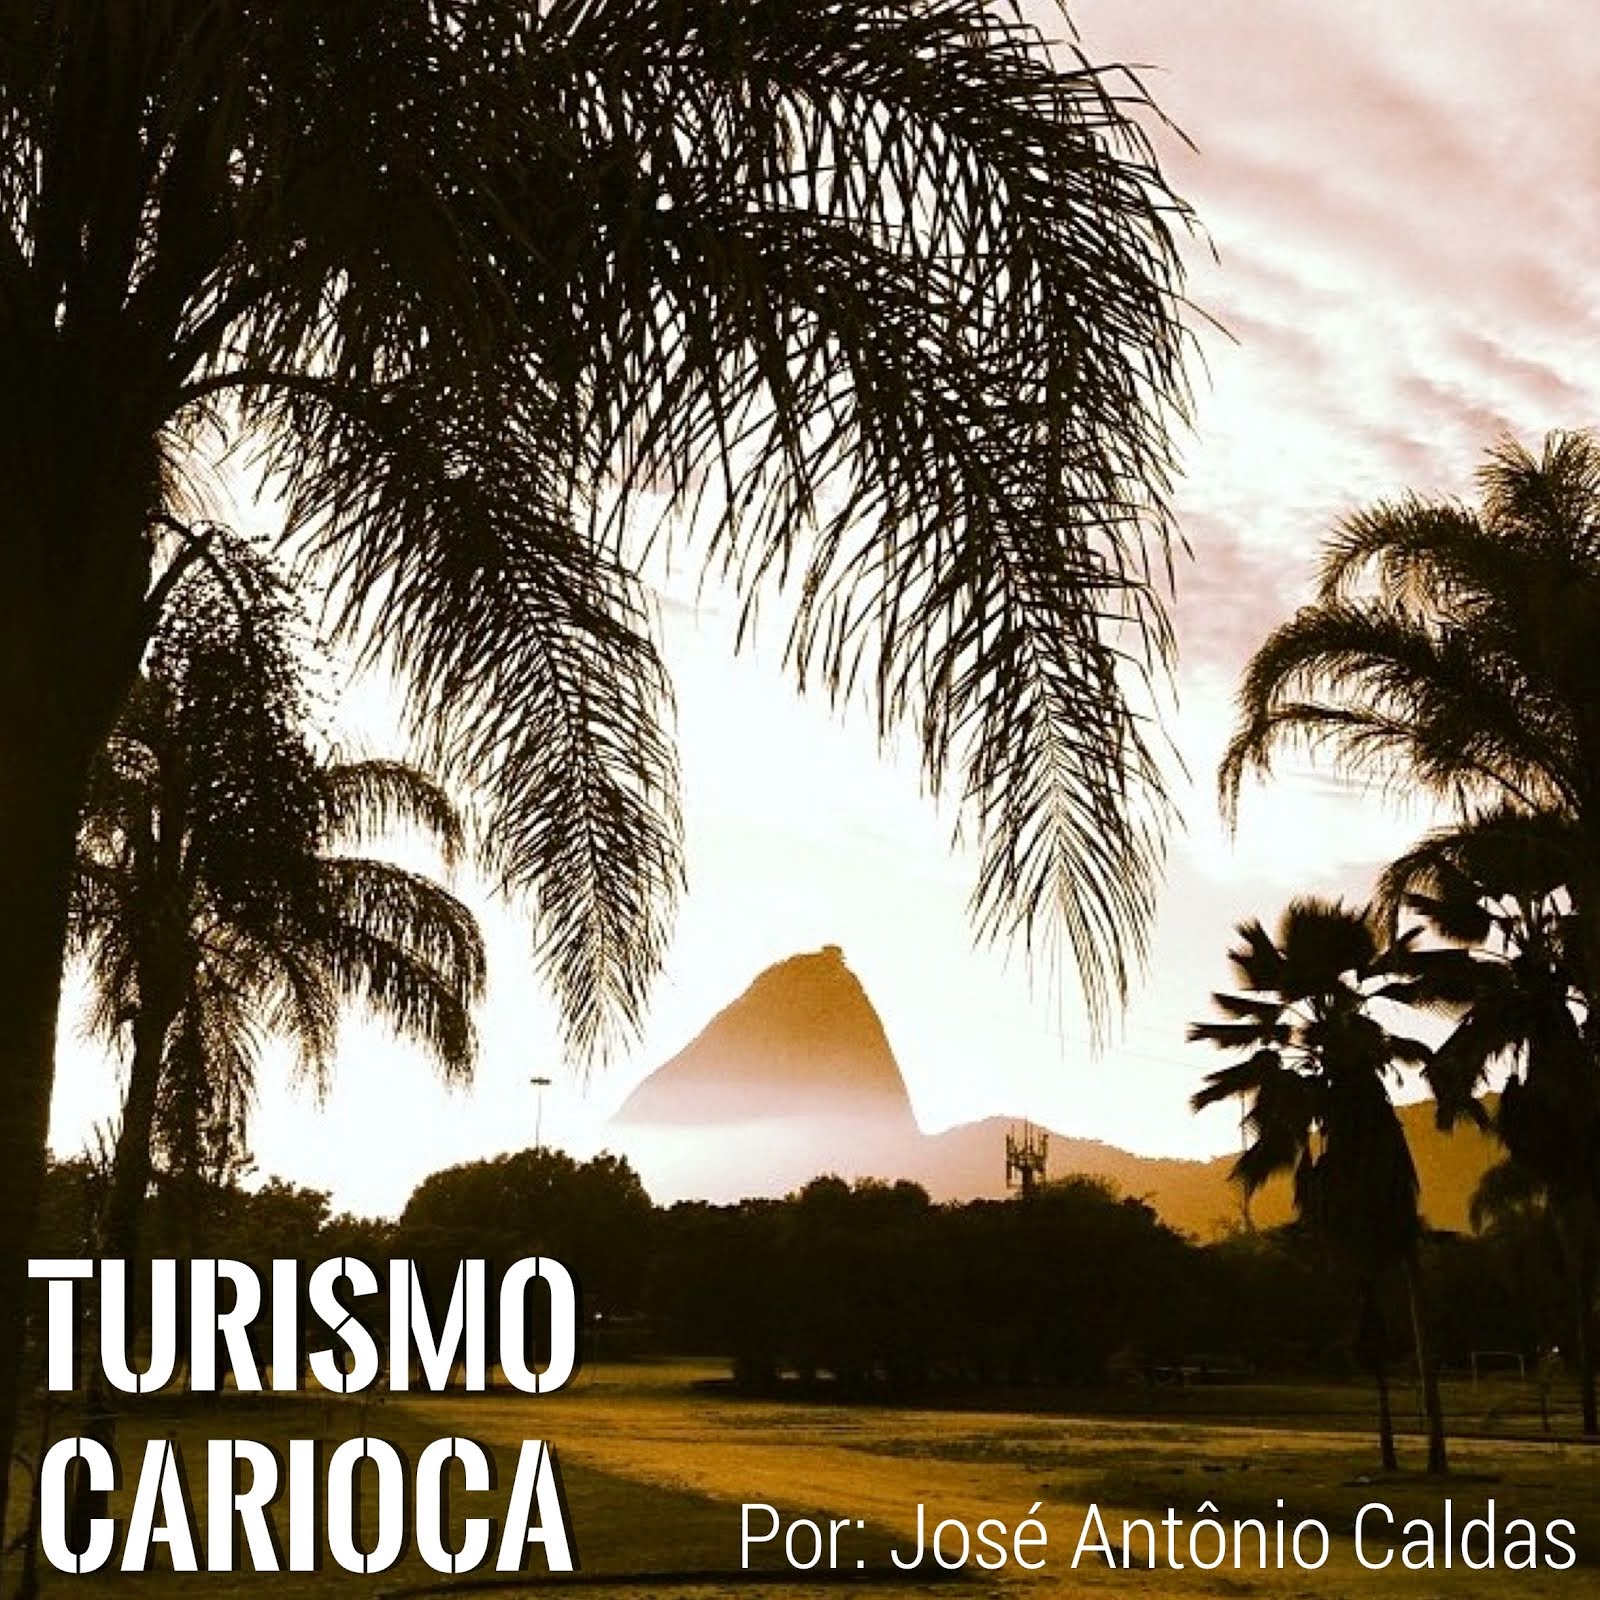 Acompanhe as dicas de turismo na cidade maravilhosa com nosso guia José Antônio Caldas.